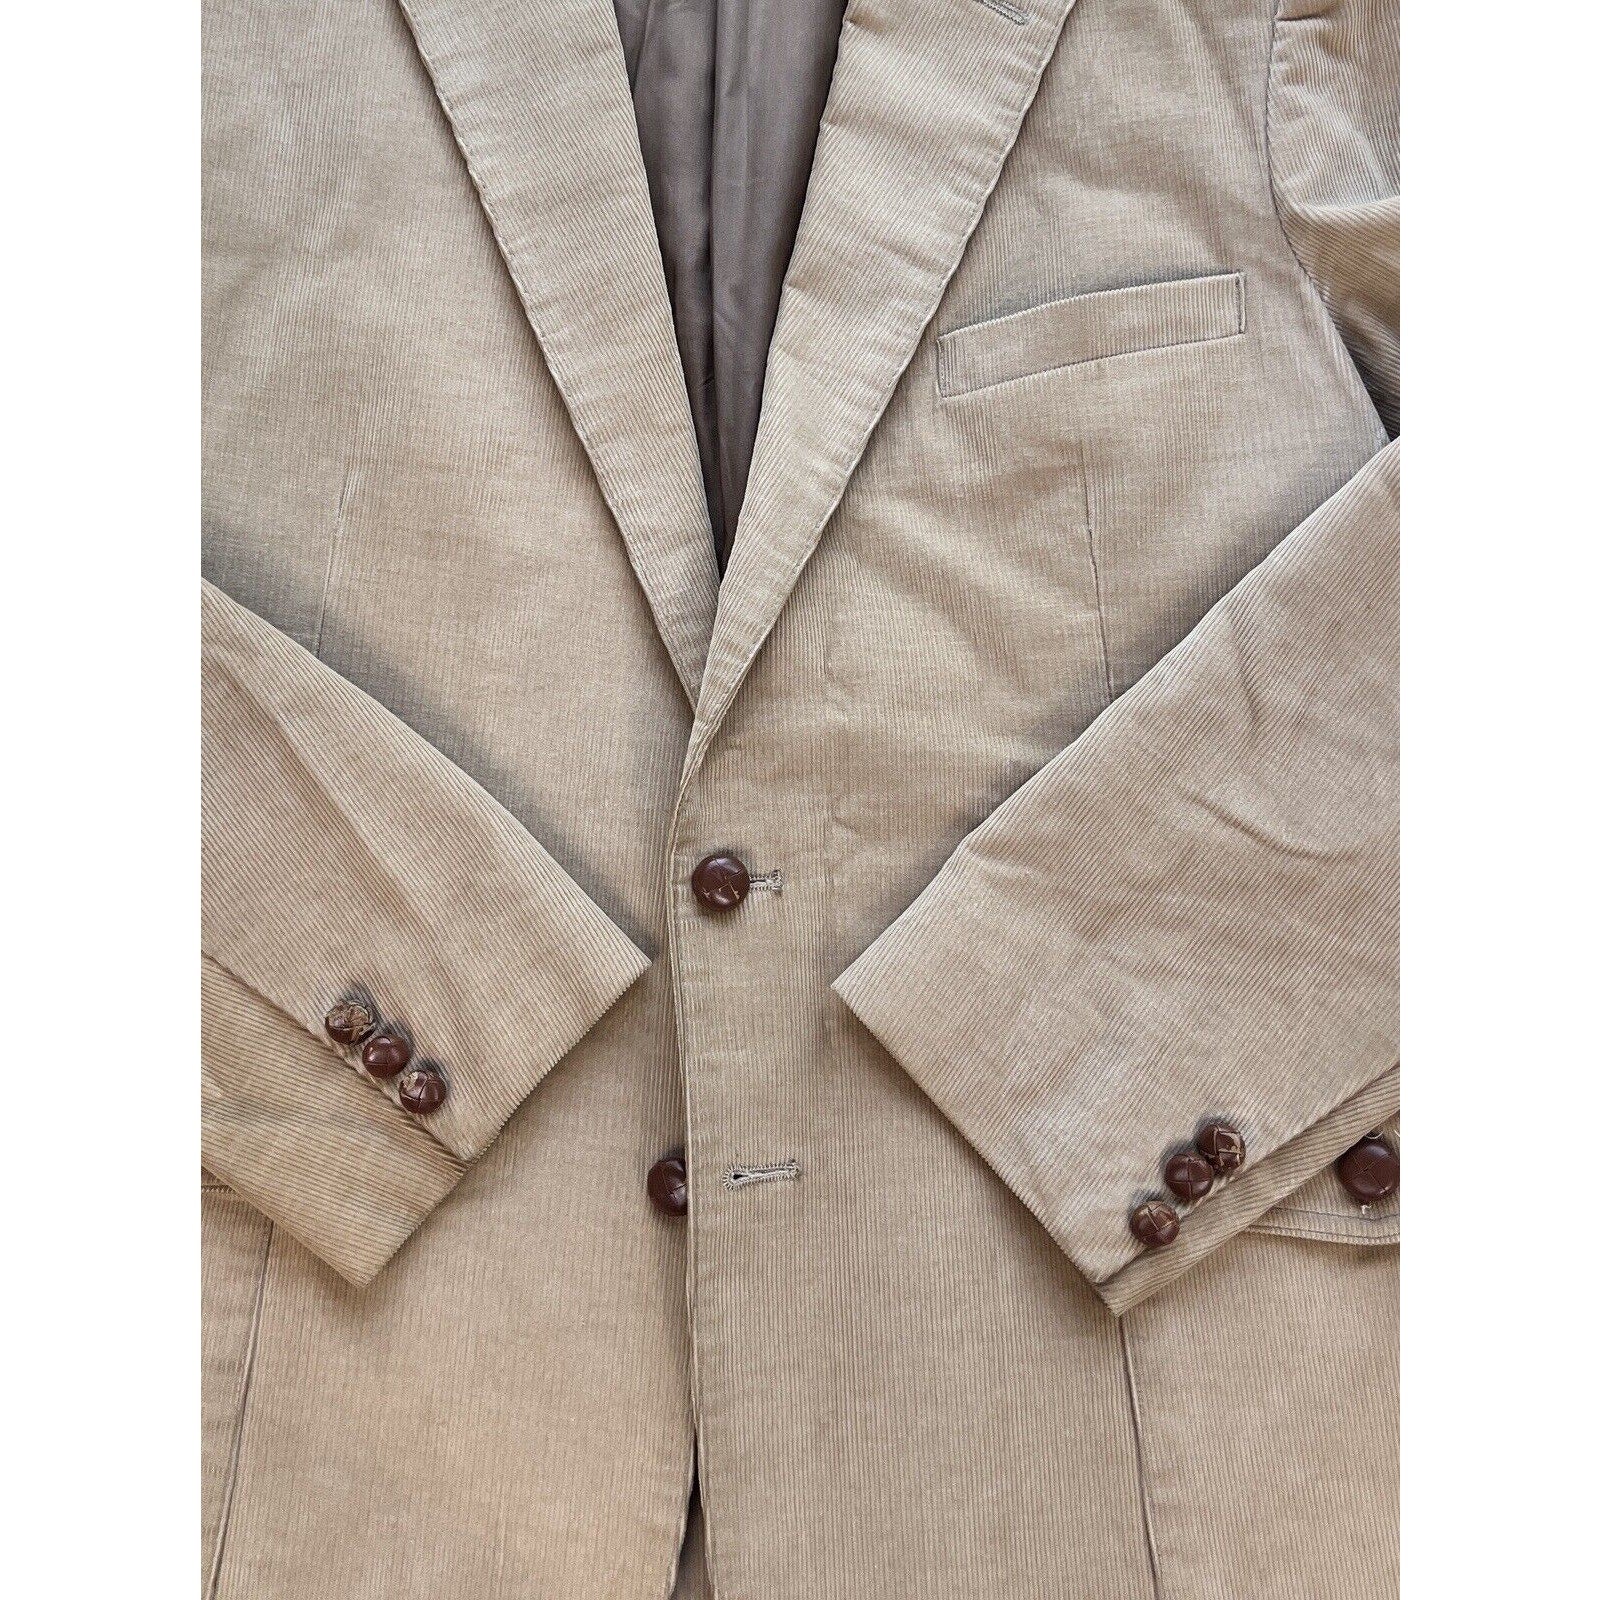 Vintage Levis Corduroy 2 Button Blazer Mens 44L Jacket Wood Button Tan Classic